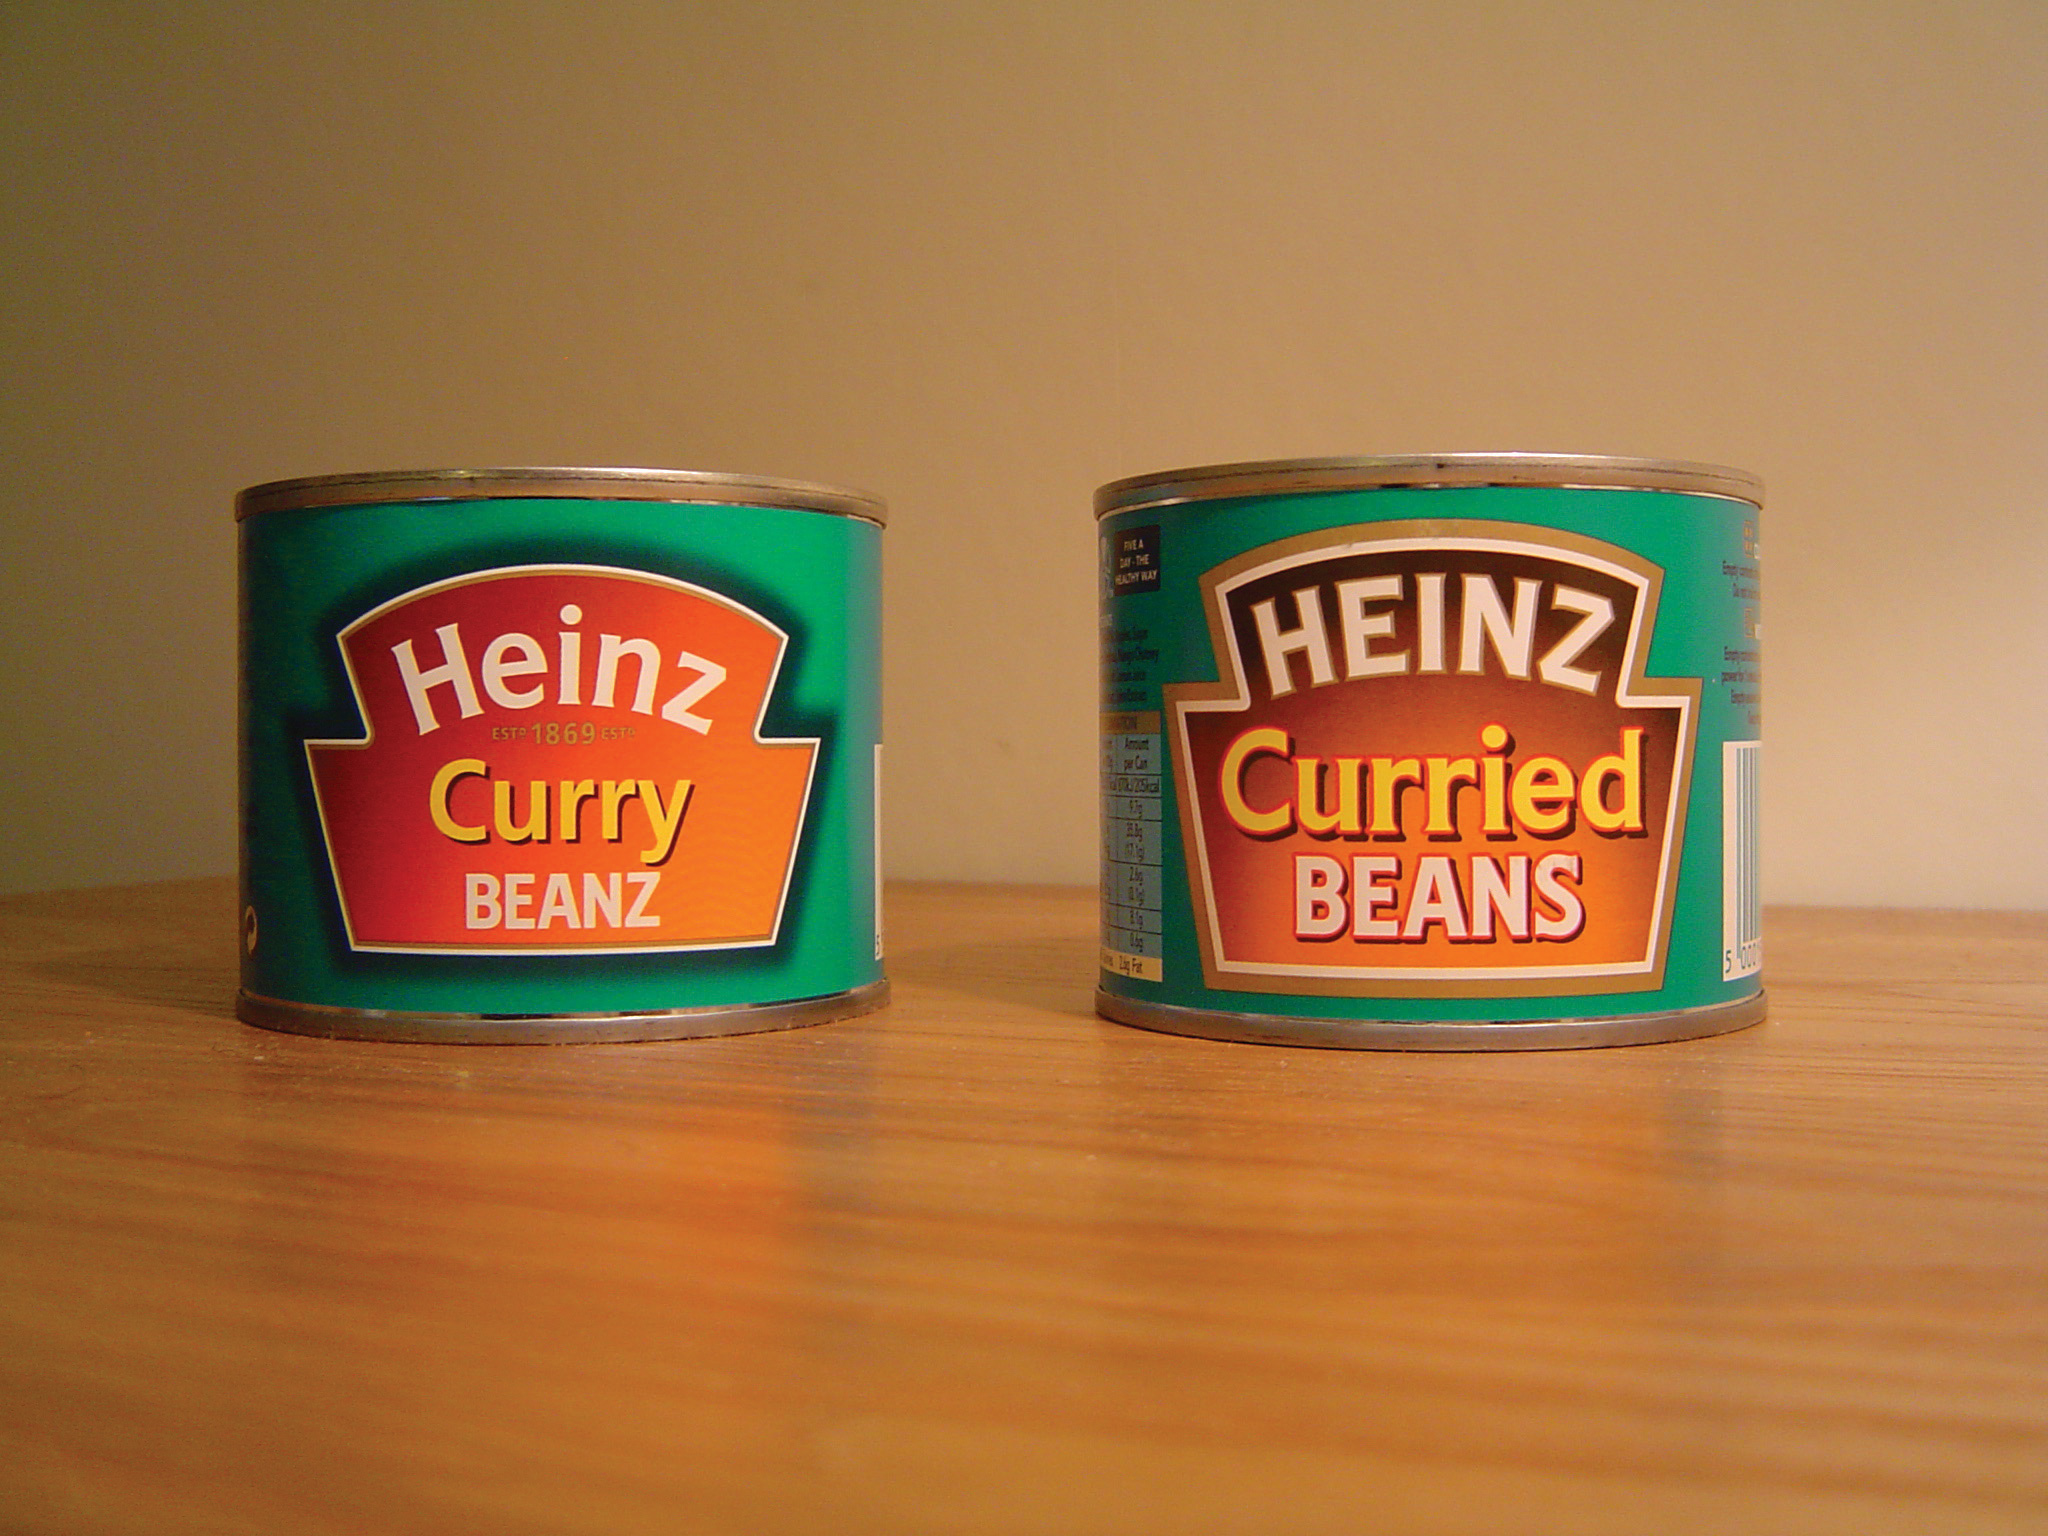 Heinz Curry Beanz